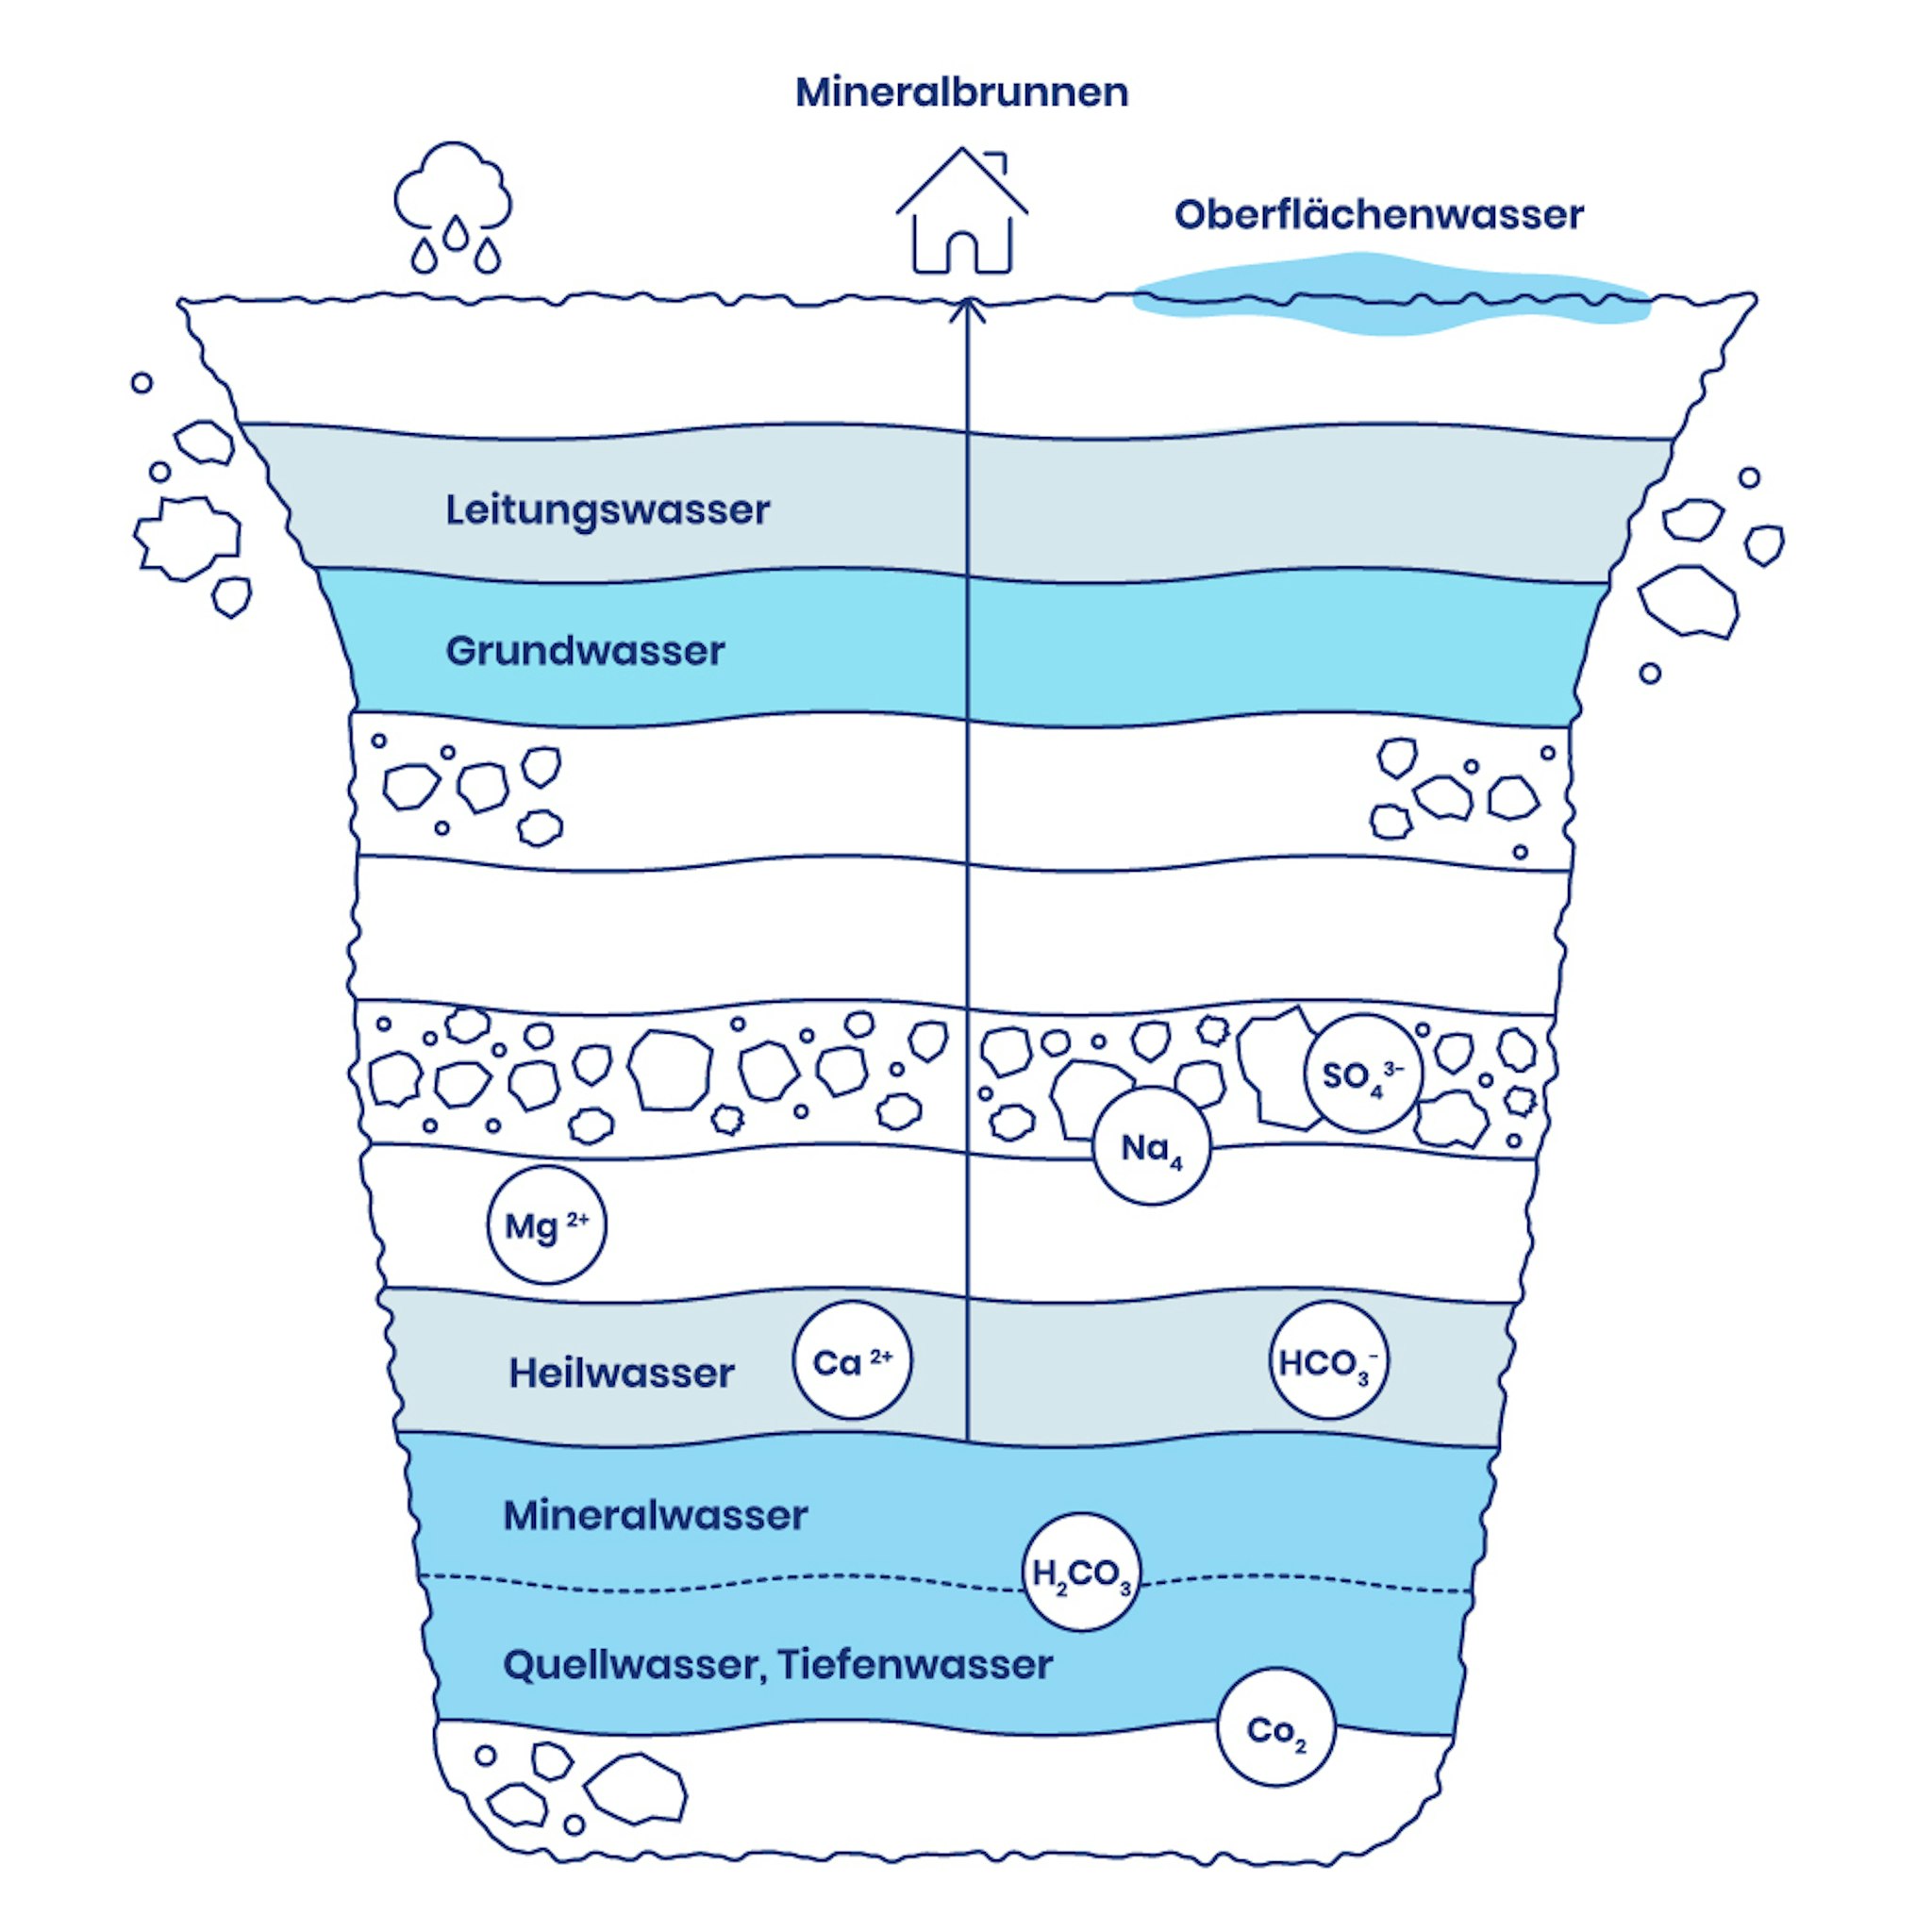 Eine Infografik, die verschiedenen Gesteinsschichten und Lagen der Wasserarten zeigt, sowie die Anordnung der Mineralien